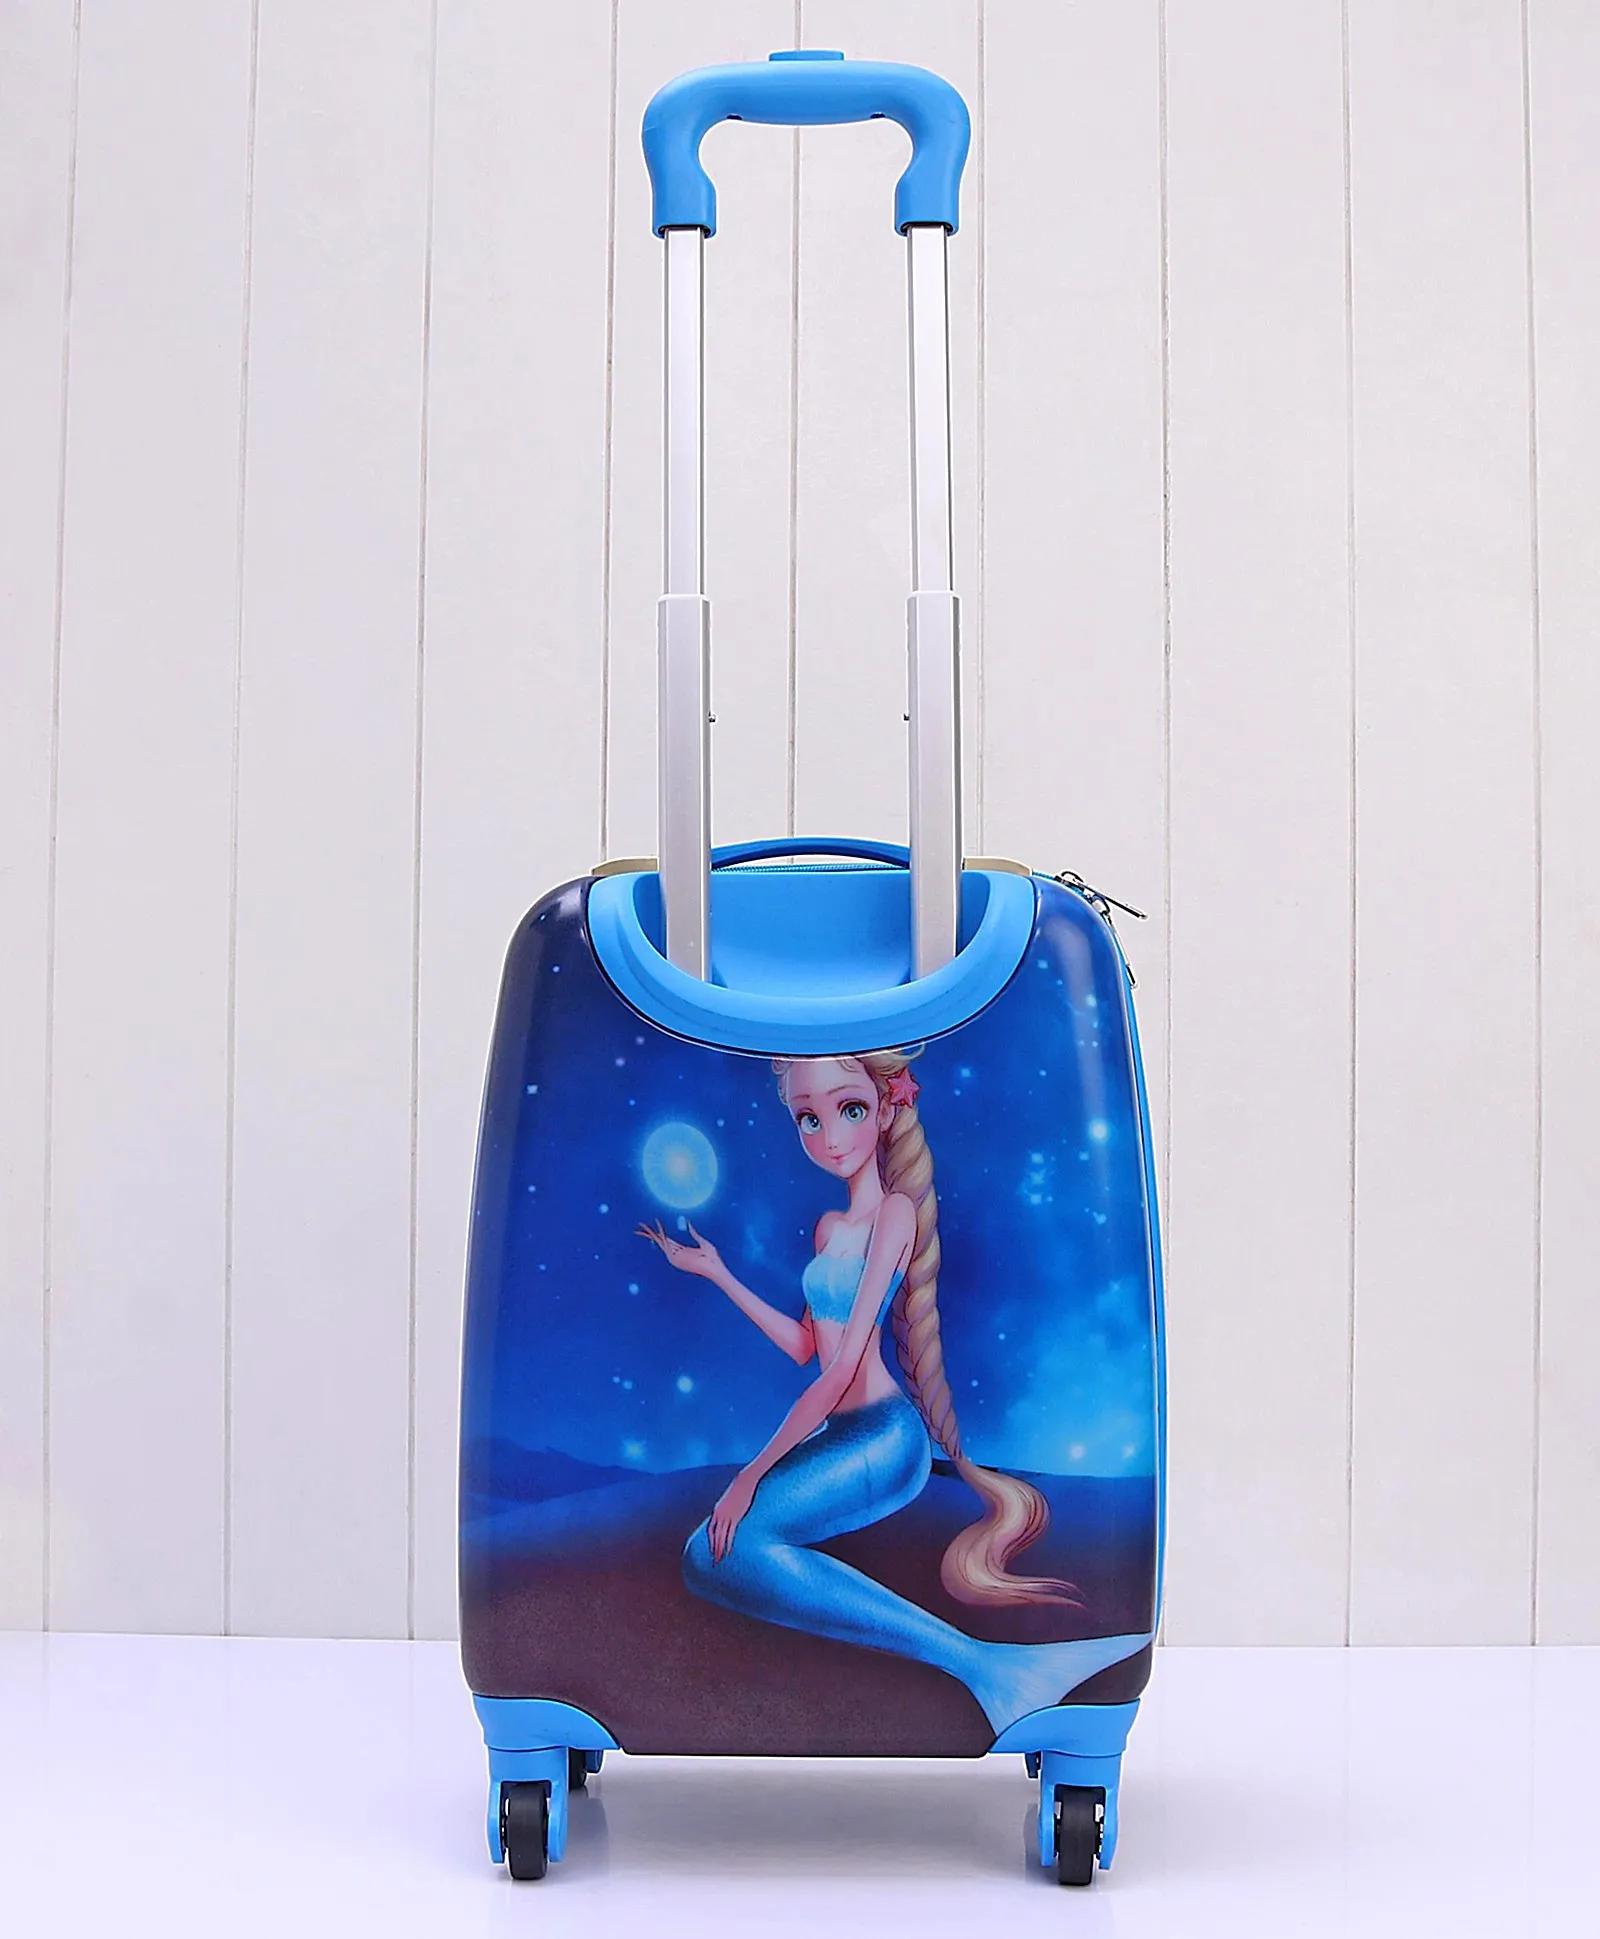 Babyhug Kids Trolley Bag Mermaid Print - Blue Online in UAE, Buy at ...